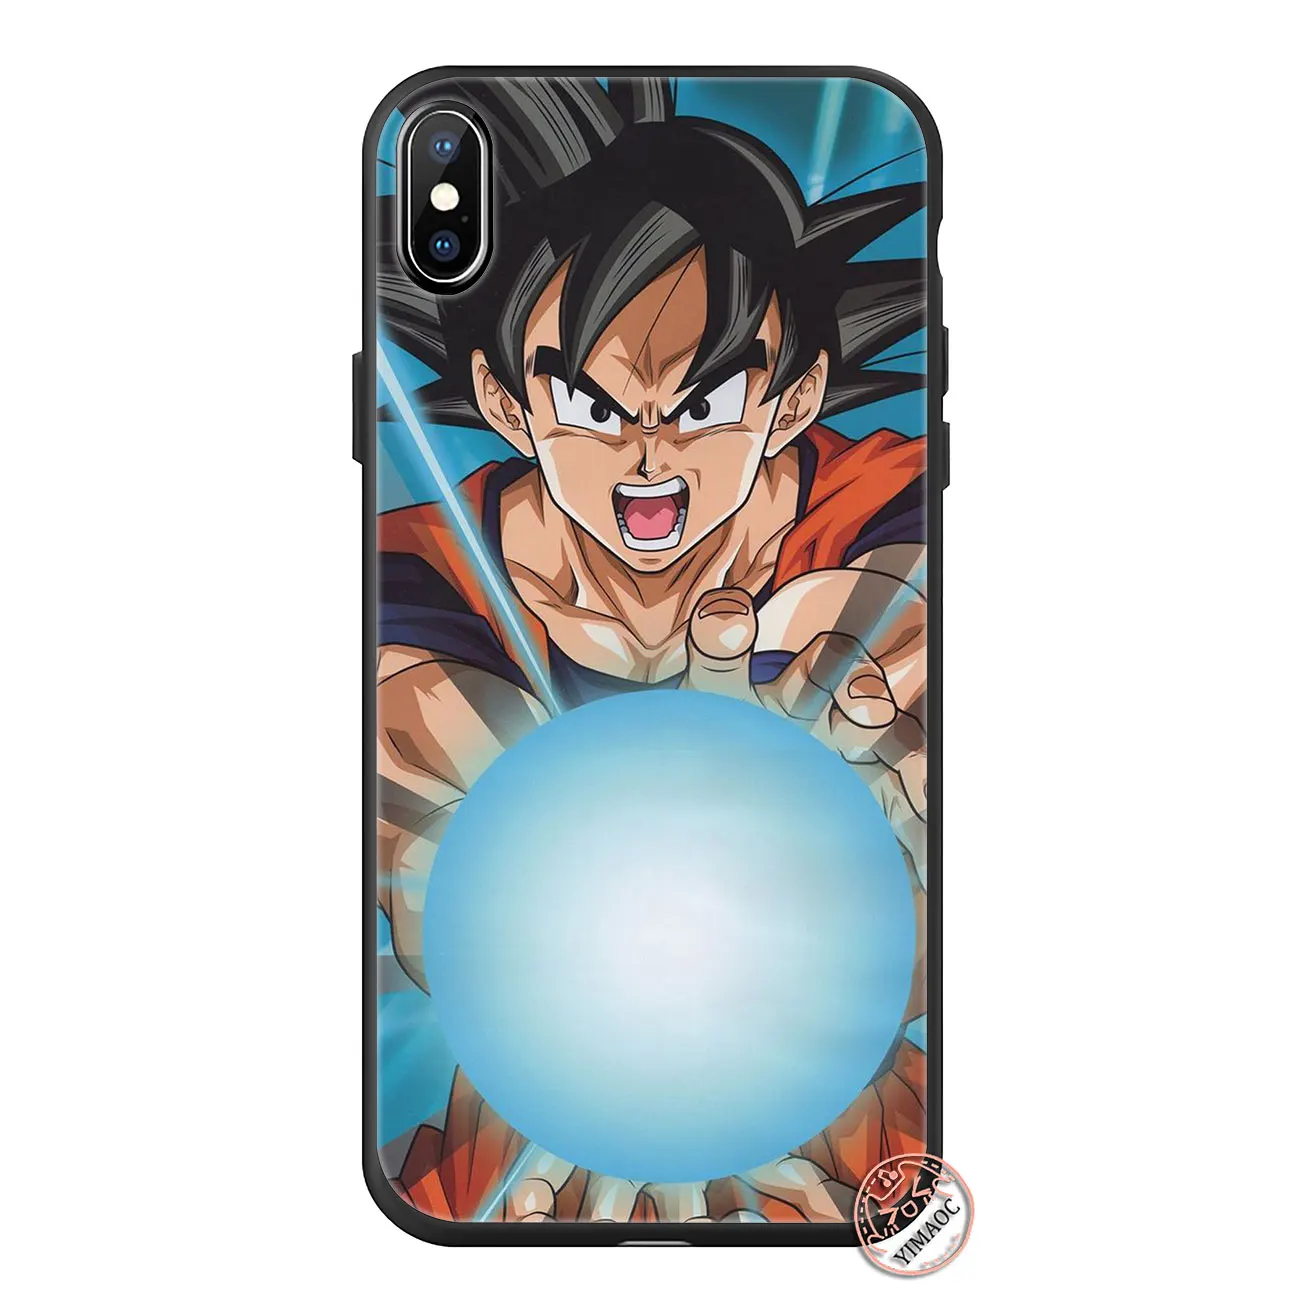 YIMAOC Dragon Ball z Goku Мягкий силиконовый чехол для телефона iPhone 11 Pro XS Max XR X 6 6S 7 8 Plus 5 5S SE 10 TPU черный чехол - Цвет: 4